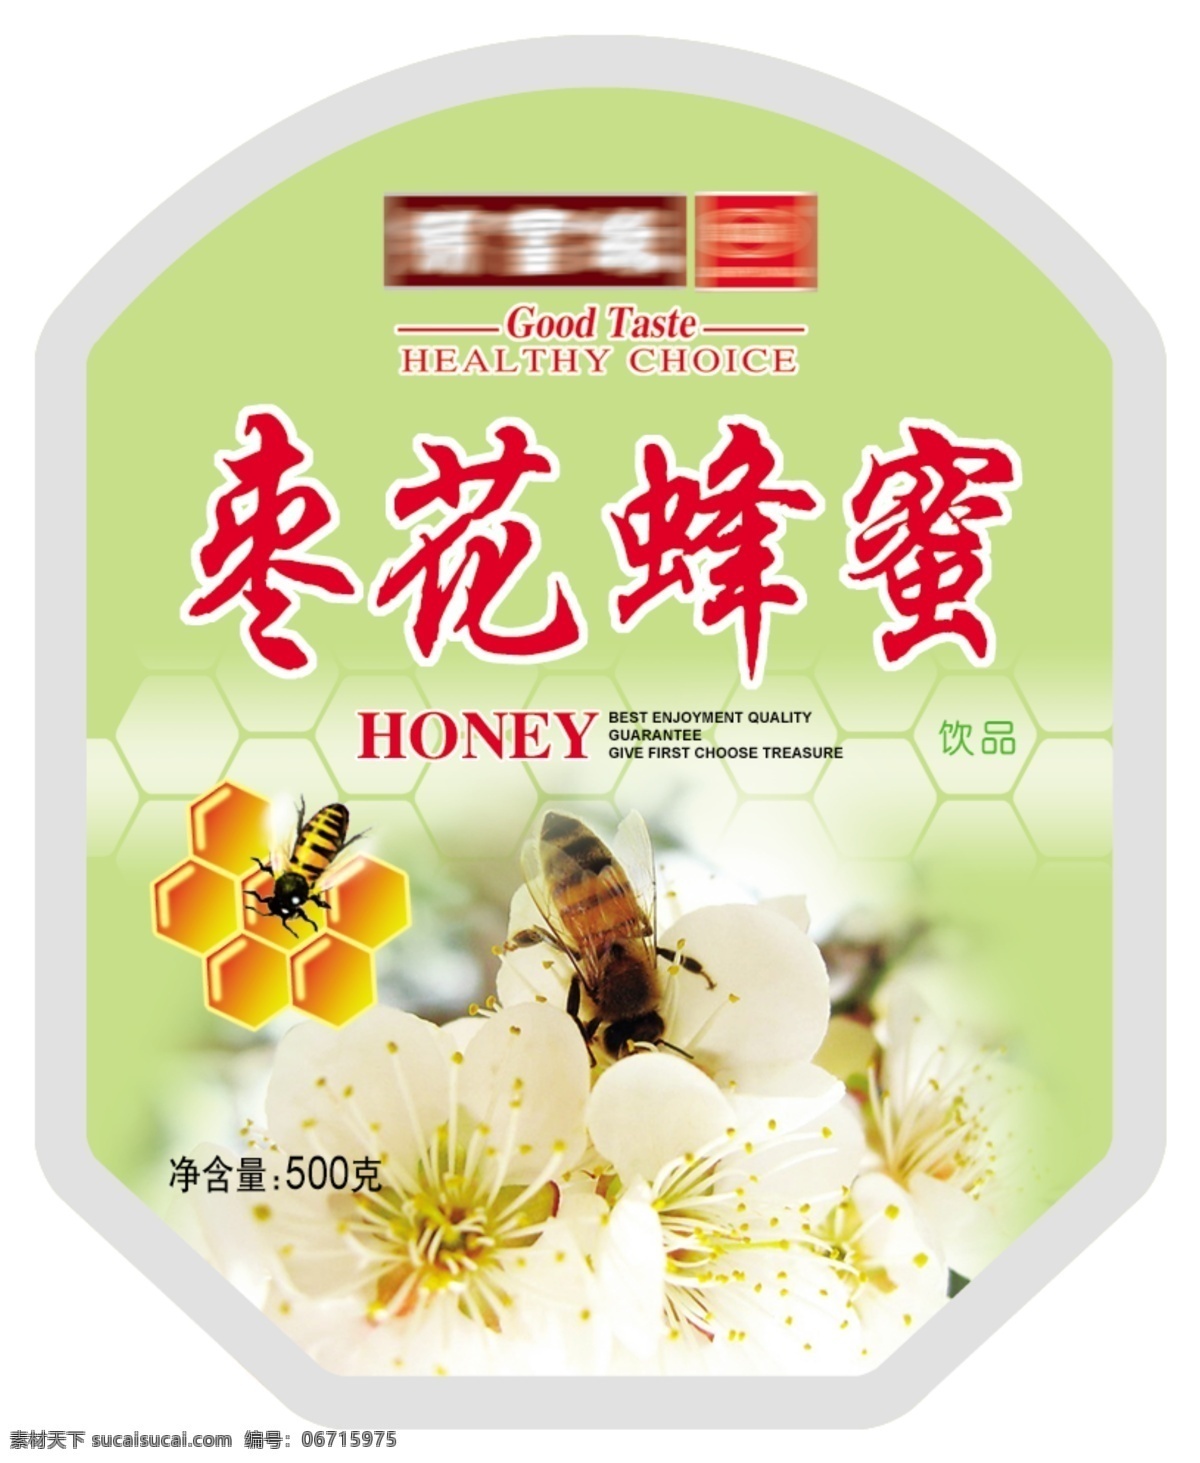 蜂蜜瓶贴 瓶贴设计 枣花蜂蜜 psd分层 标贴 包装设计